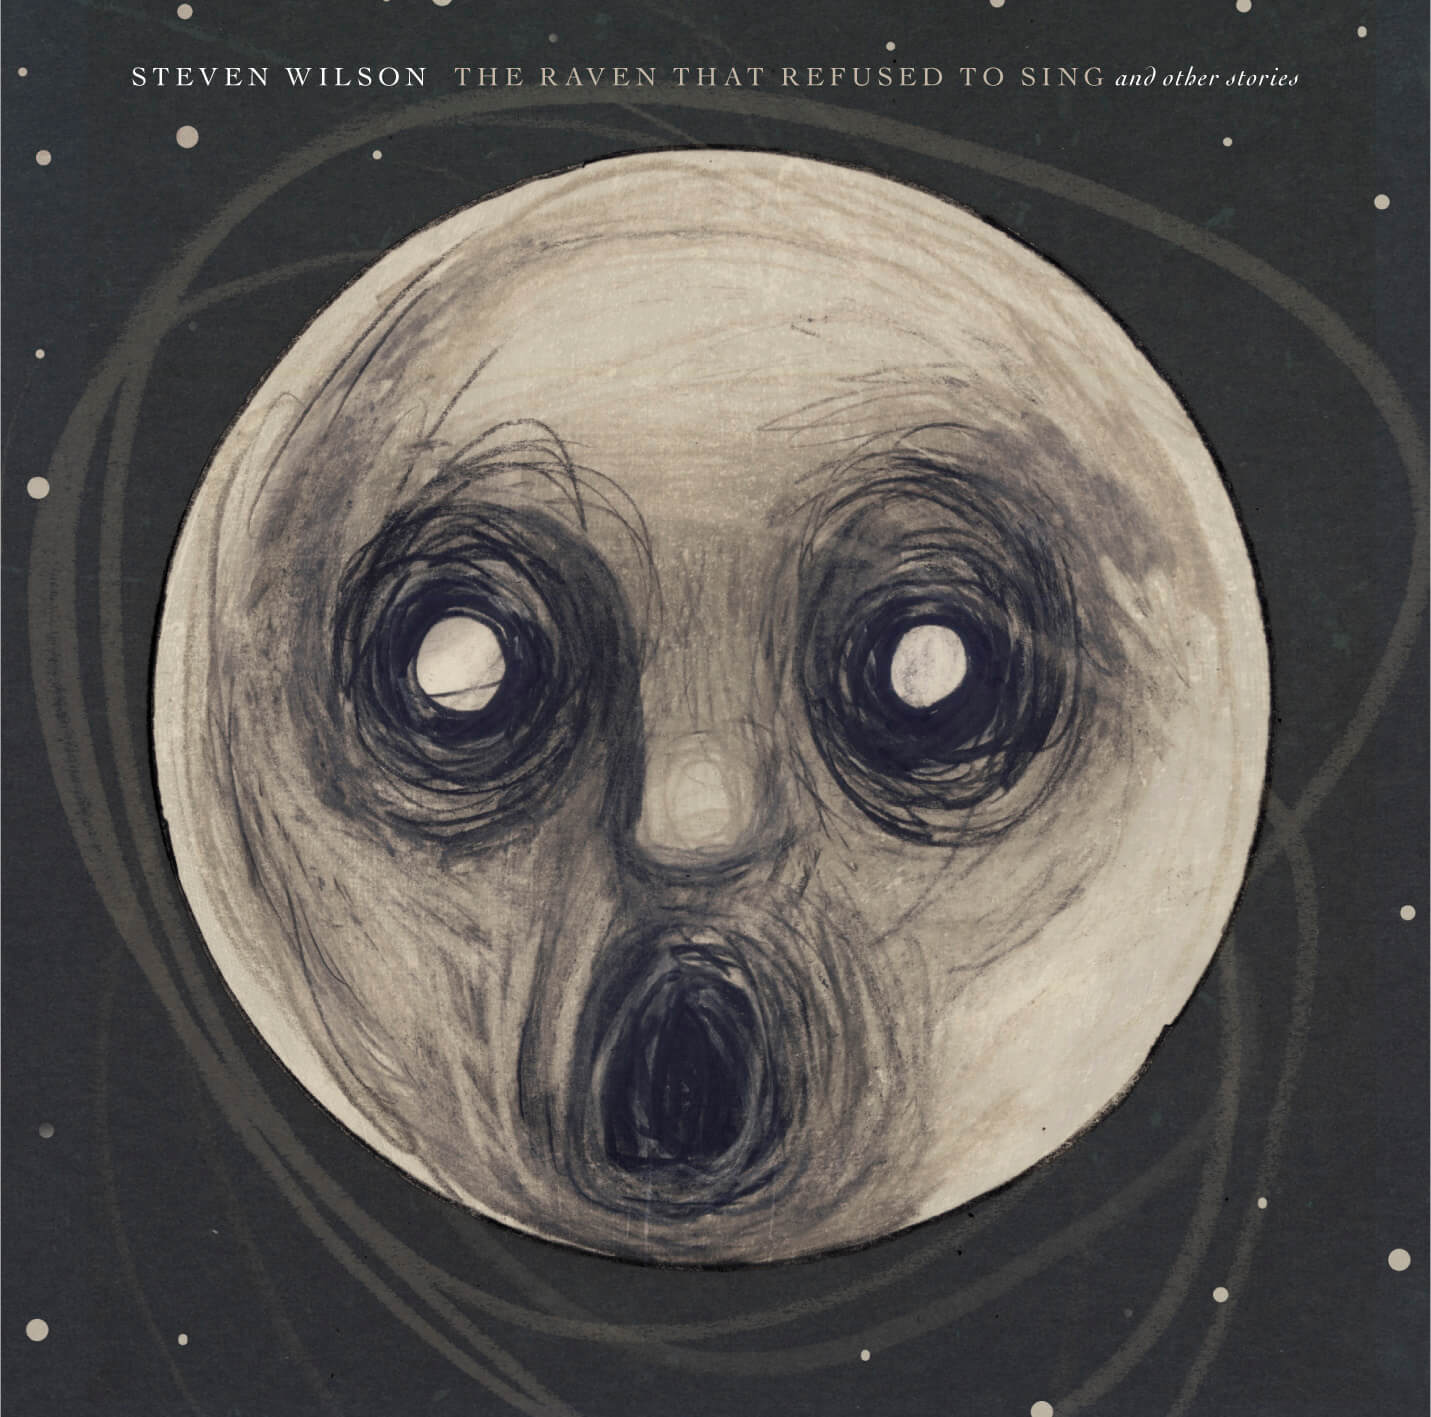 Steven Wilson - "Przełom myśli"